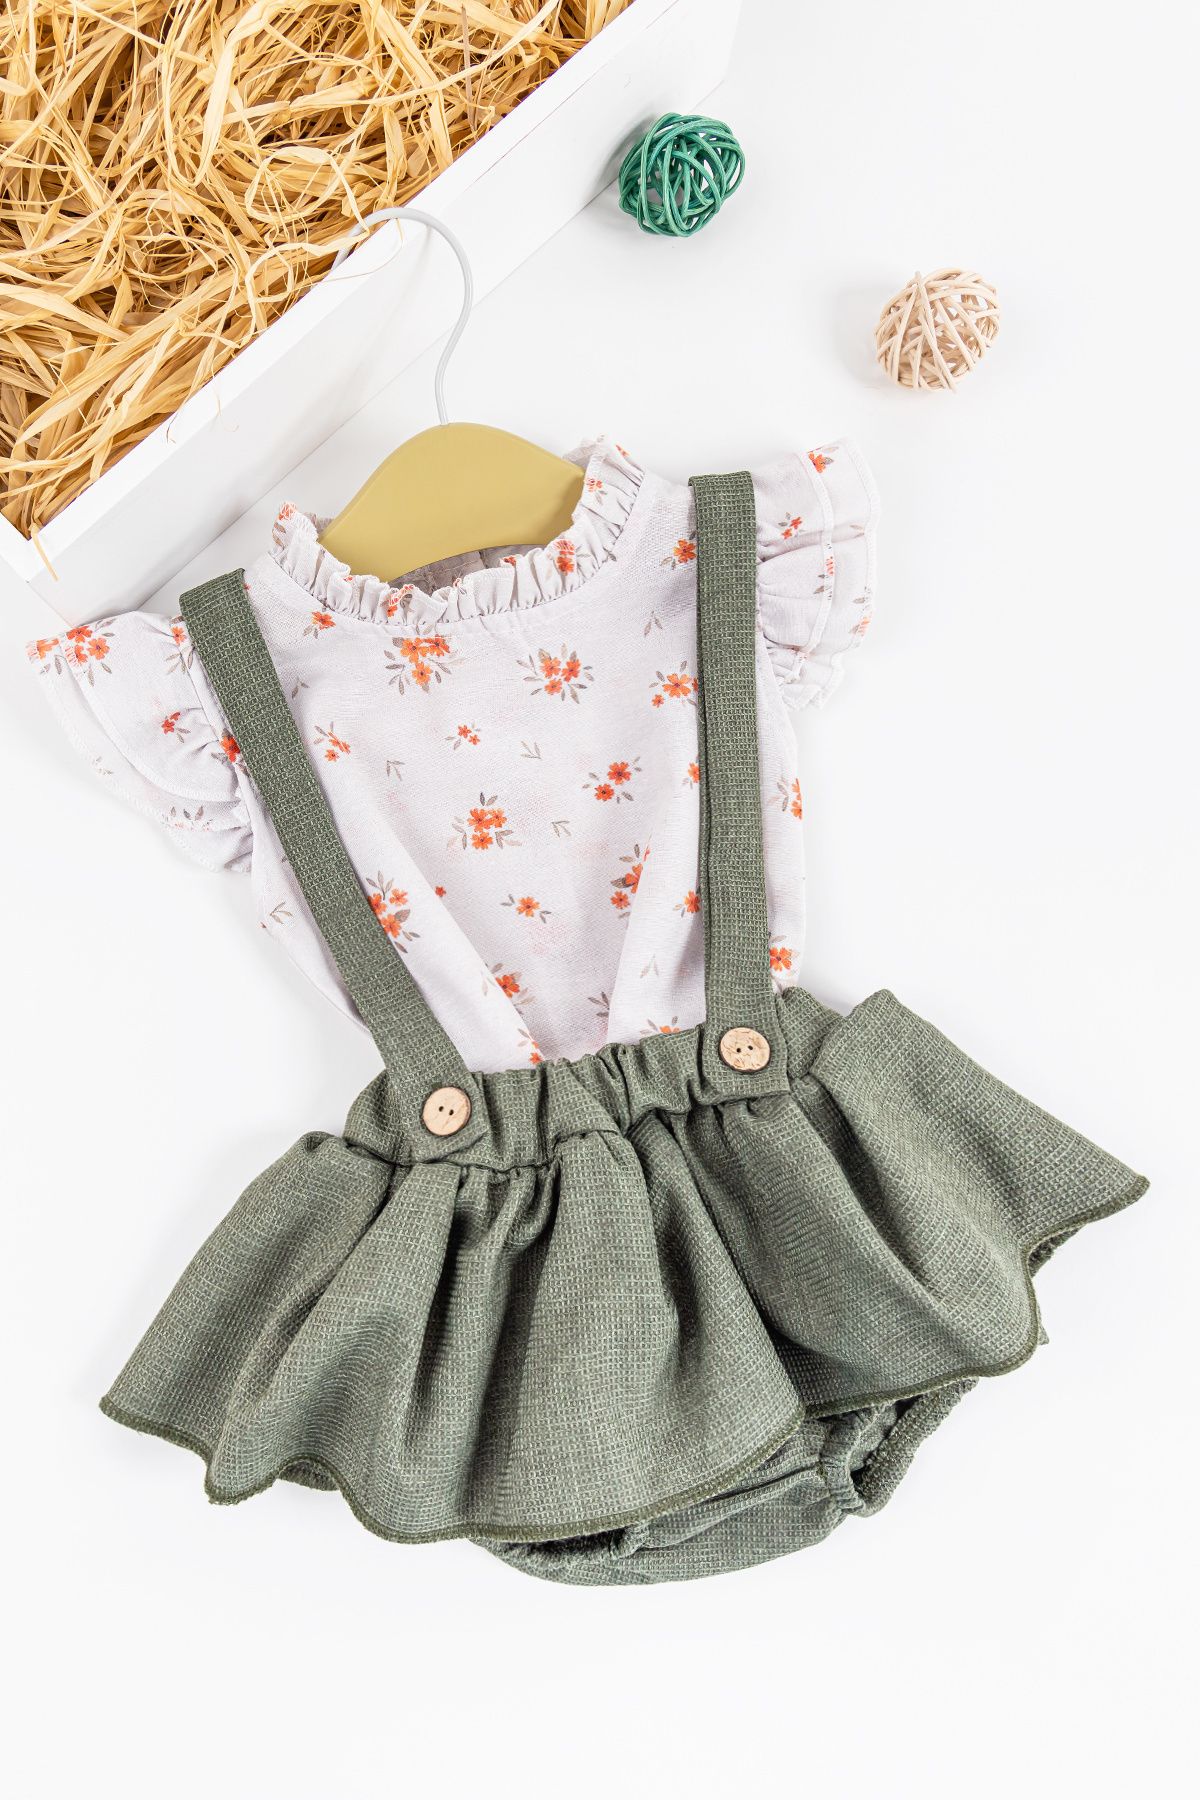 Babymod Çiçekli Desenli Gömlekli Kız Bebek Salopet Elbise Takım